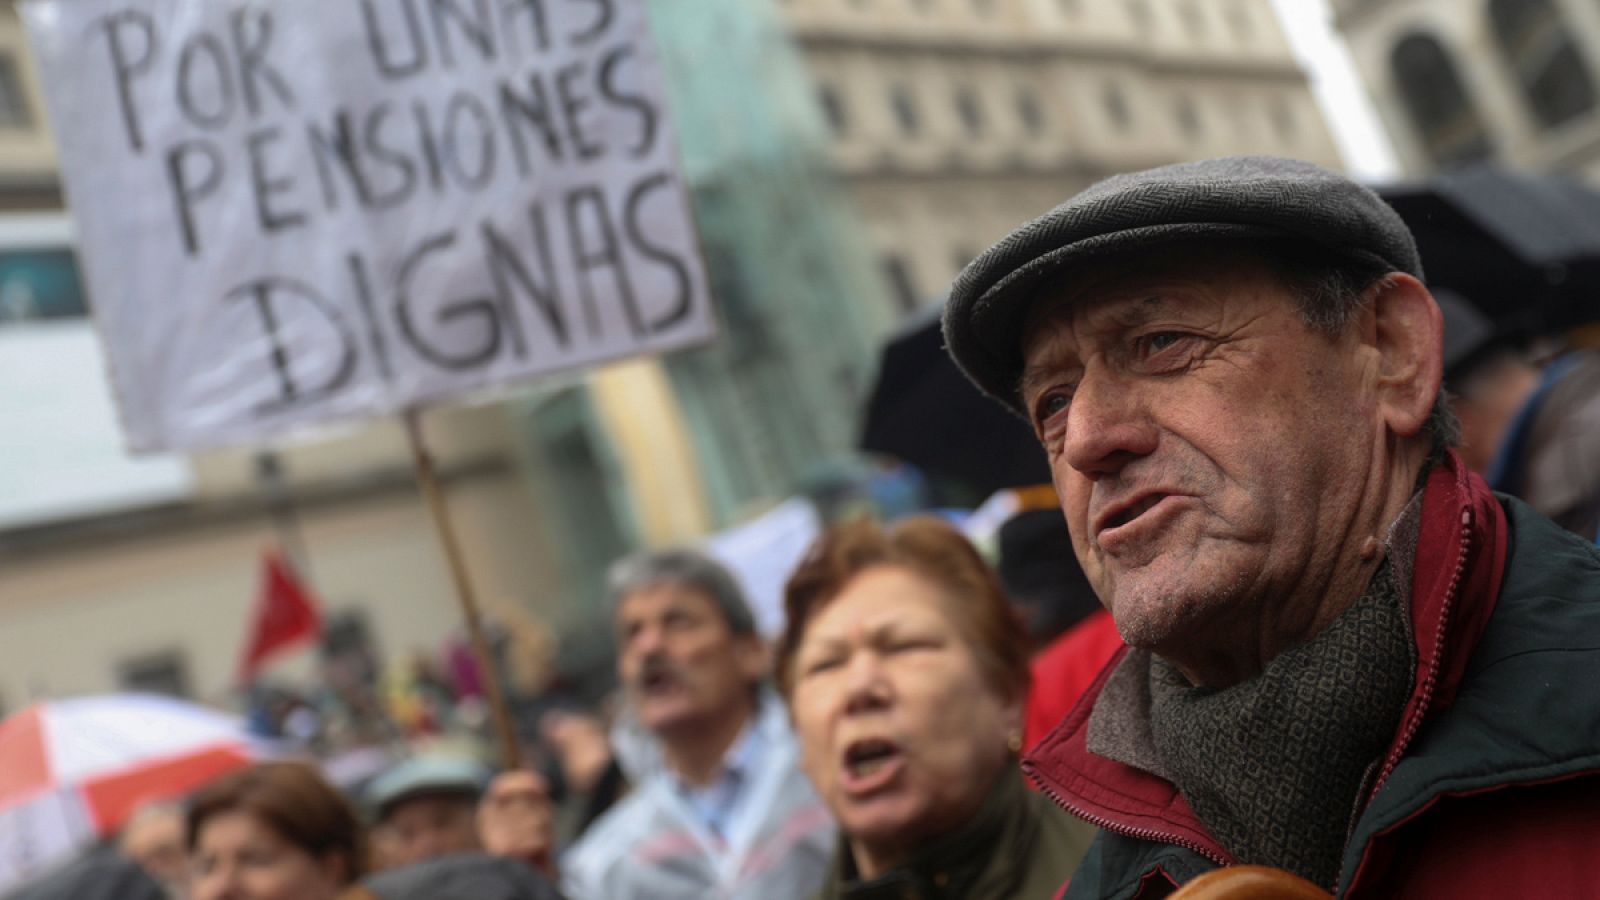 Un hombre grita durante la manifestación delante de un cartel que pide "pensiones dignas"